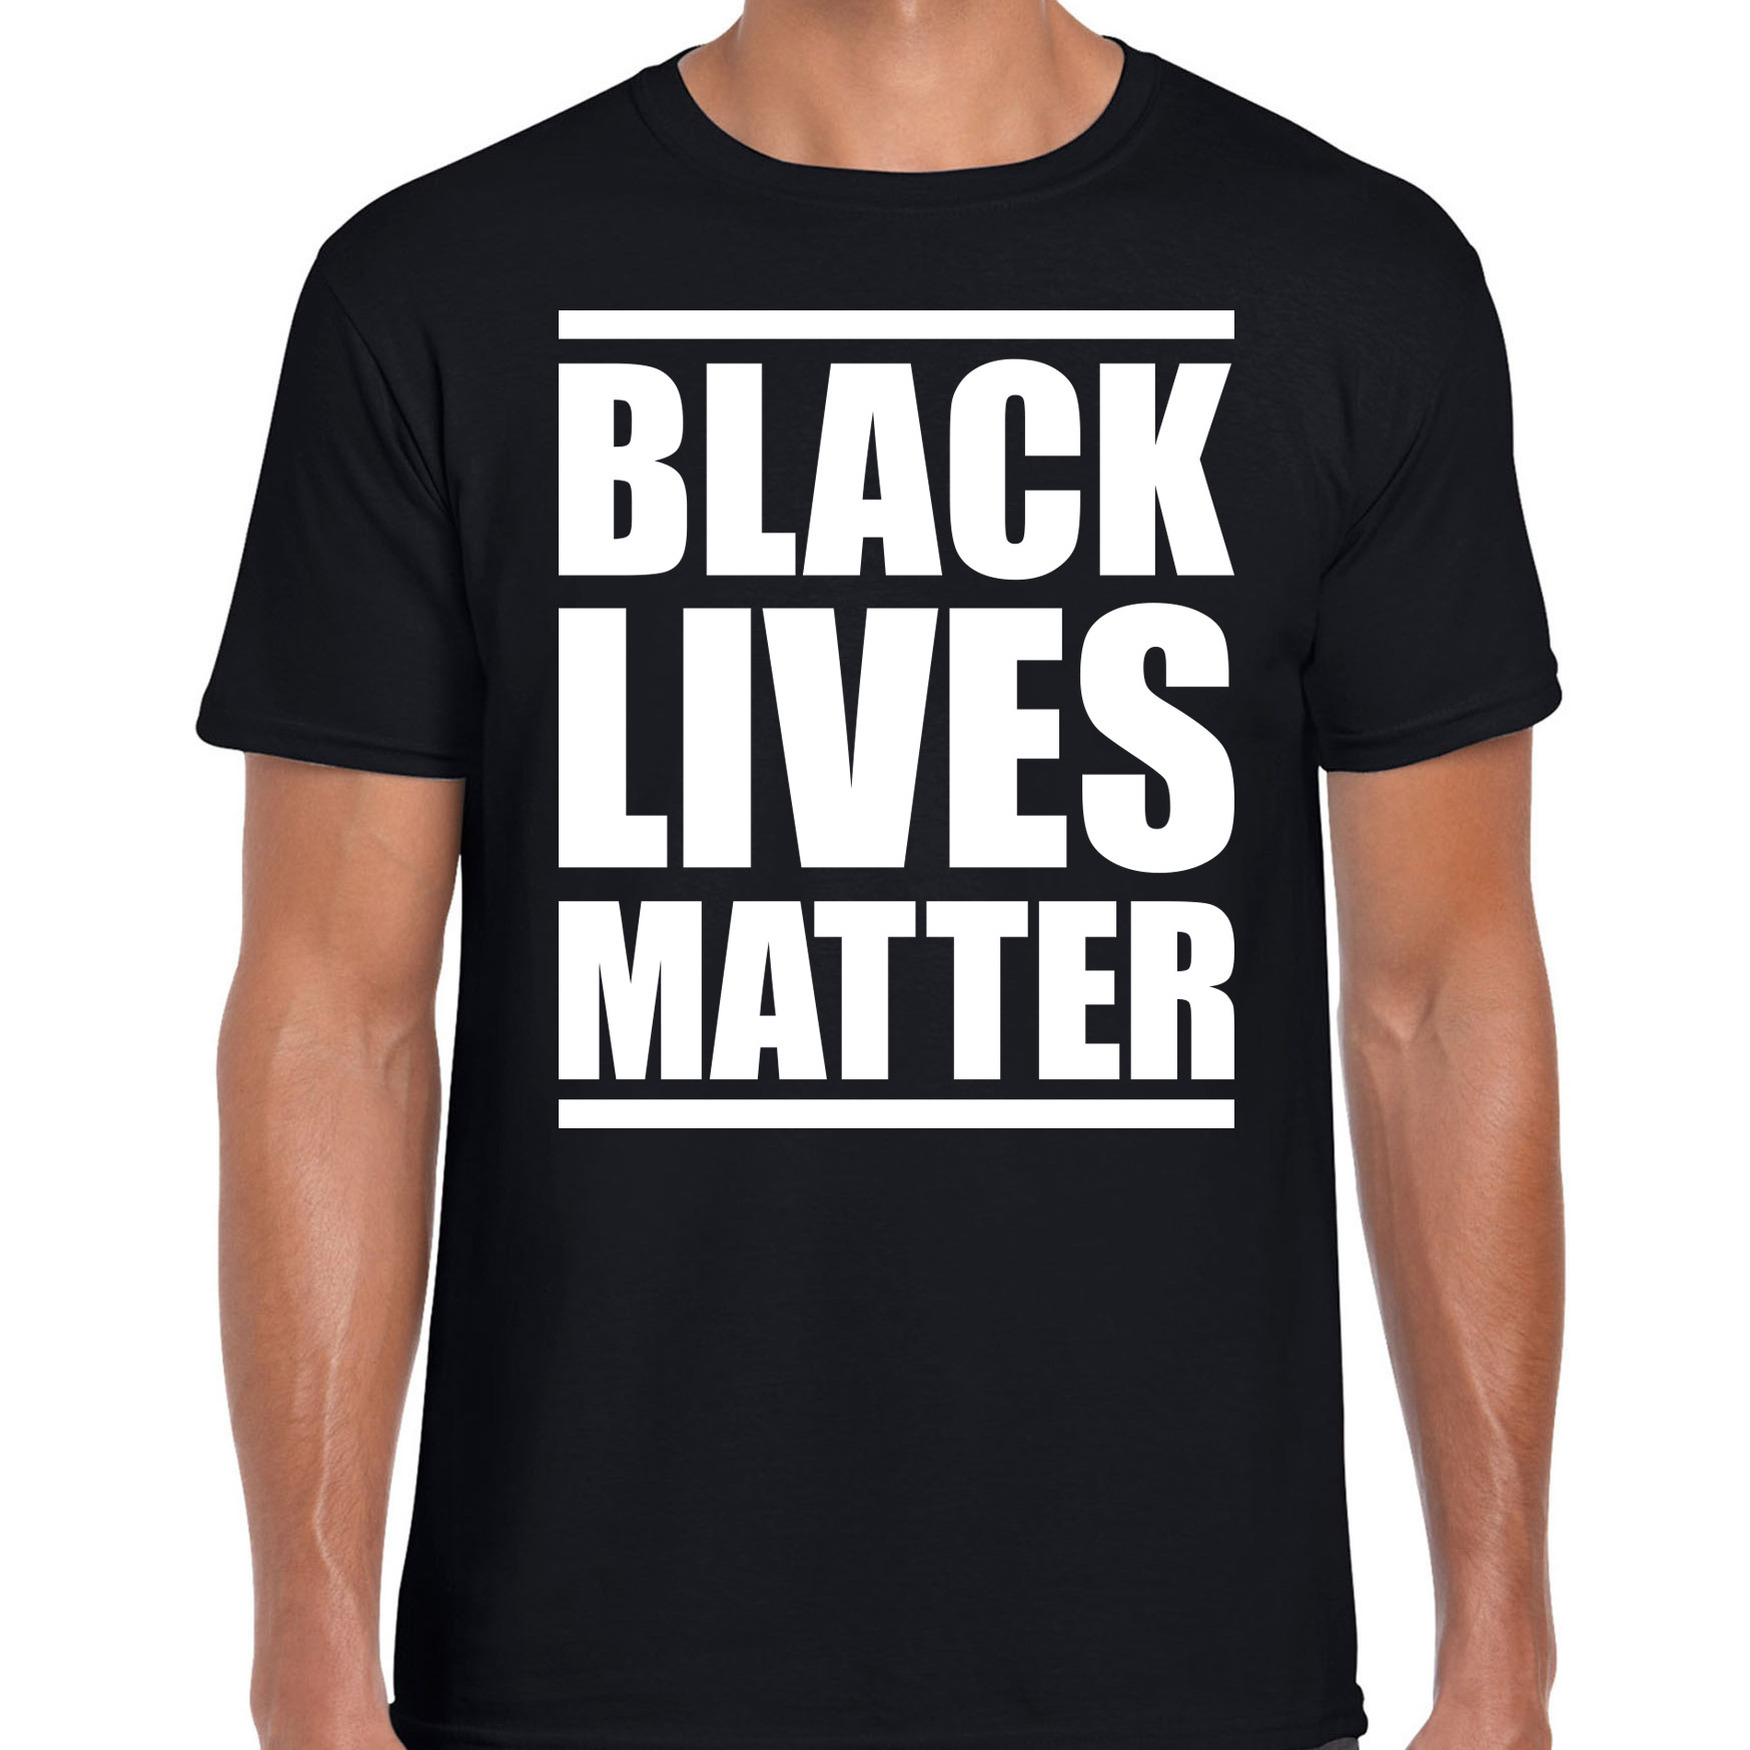 Black lives matter demonstratie / protest t-shirt zwart voor heren